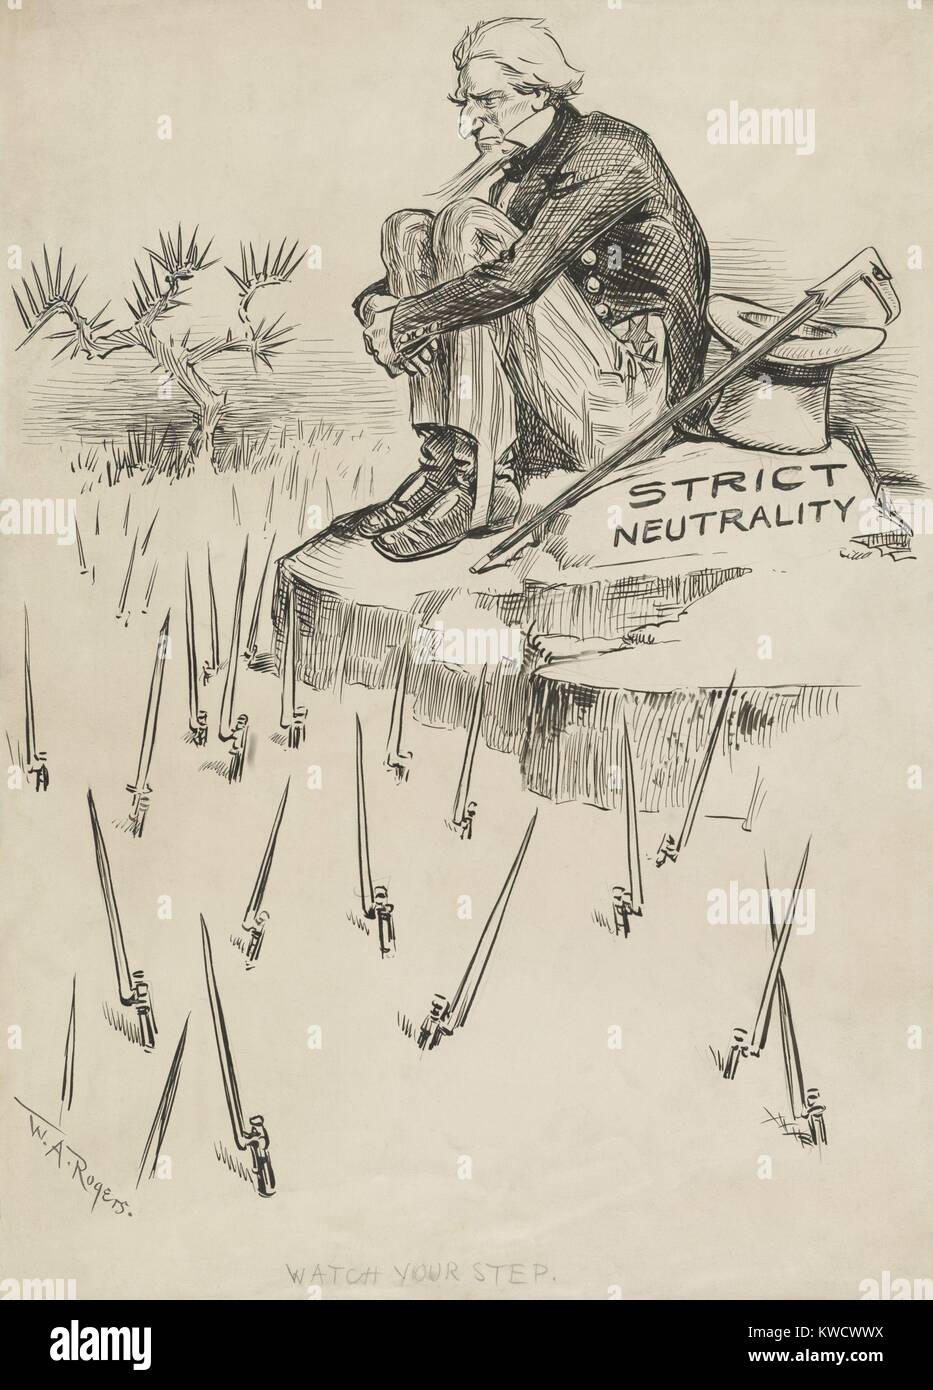 Guarda il tuo passo, cartoon politico di un rigorosamente neutrale lo zio Sam, 1914. Egli si siede su una roccia con baionette emergente dal terreno al di sotto (BSLOC 2017 1 41) Foto Stock